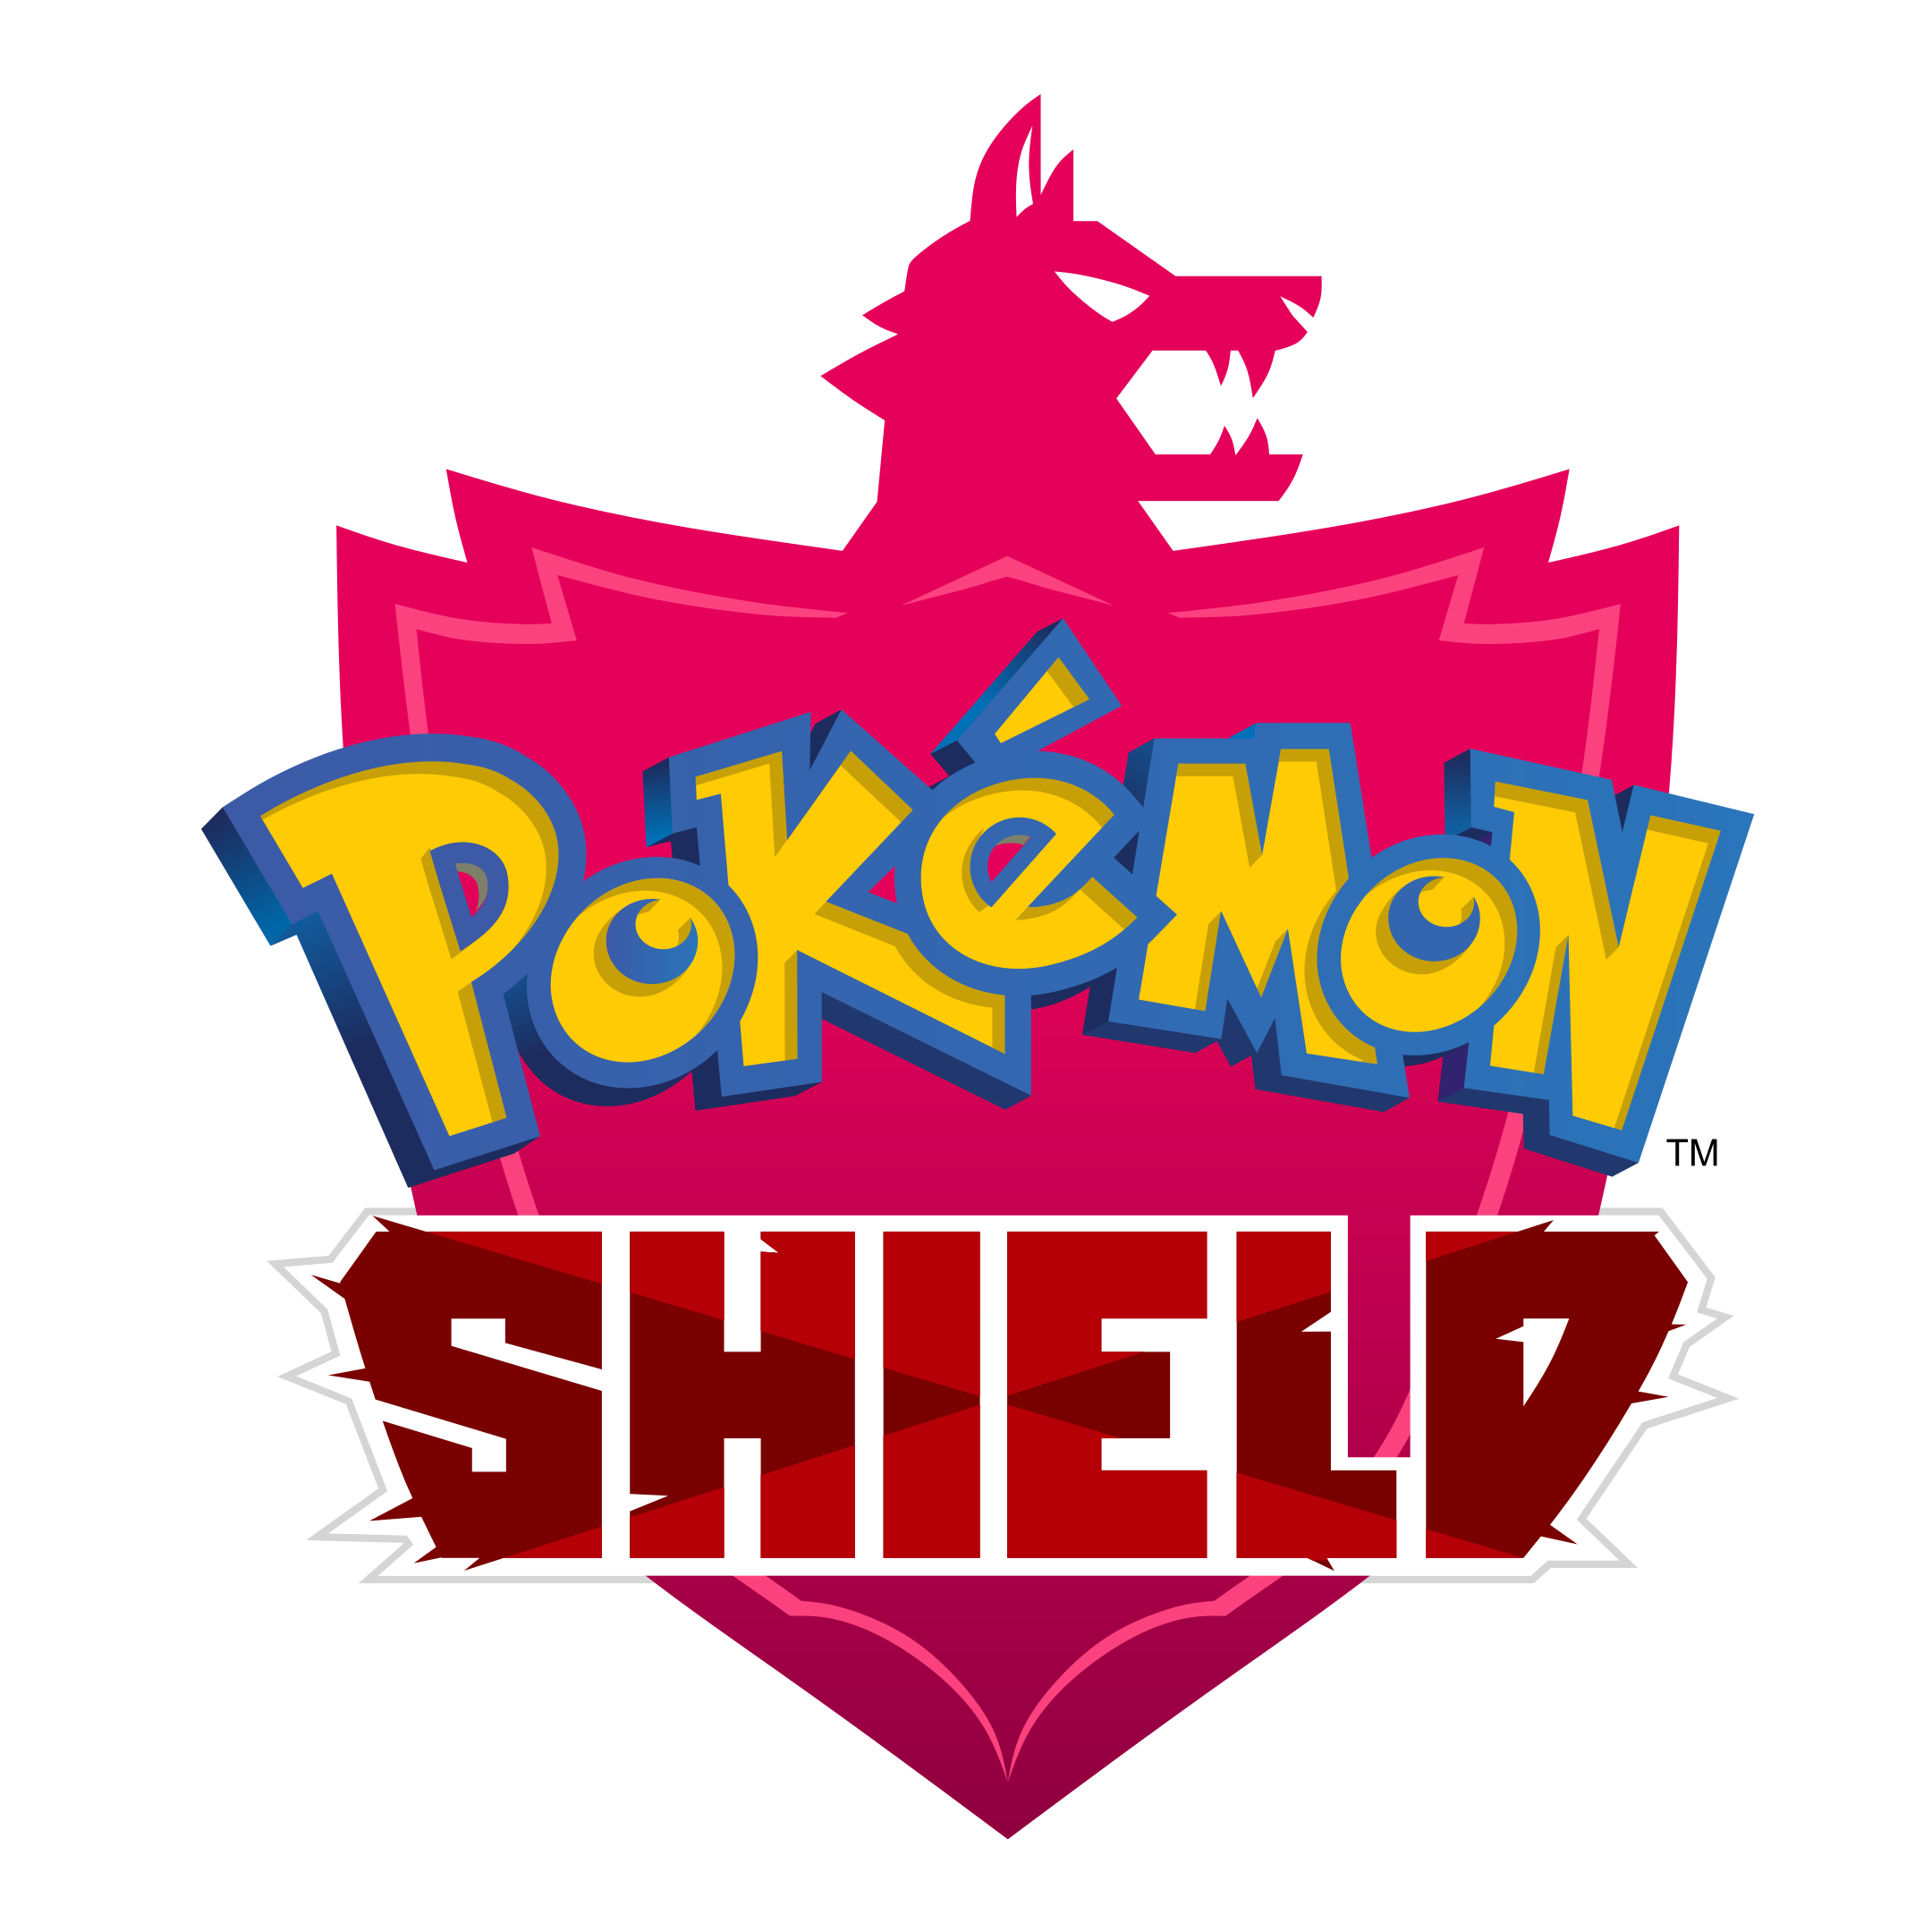 Pokemon Sword и щит прозрачные изображения PNG